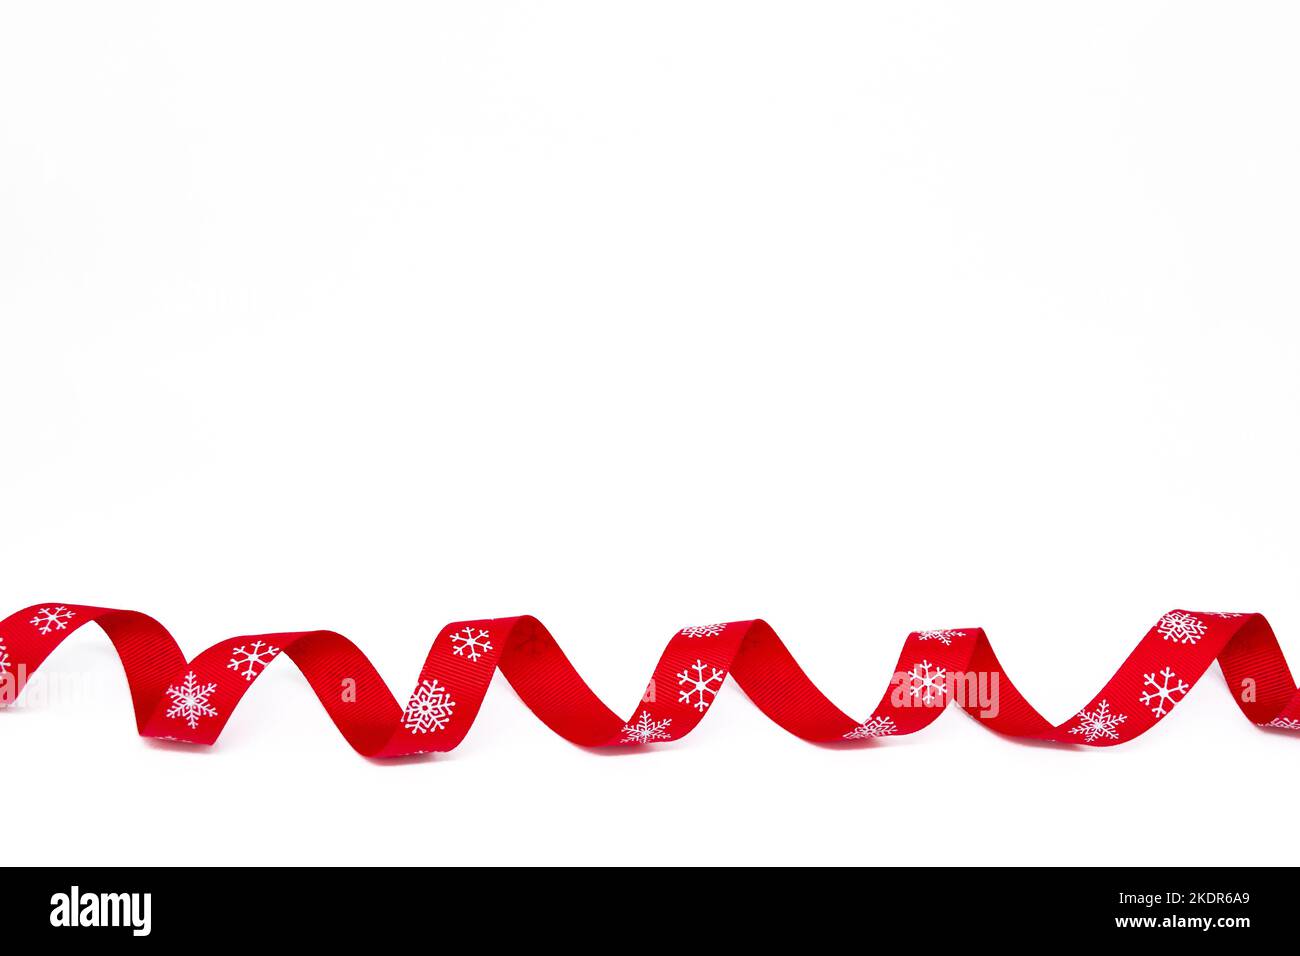 Un nastro rosso riccio luminoso con fiocchi di neve su sfondo bianco. Spazio di copia. Il concetto di Natale, San Valentino e regali. Foto Stock